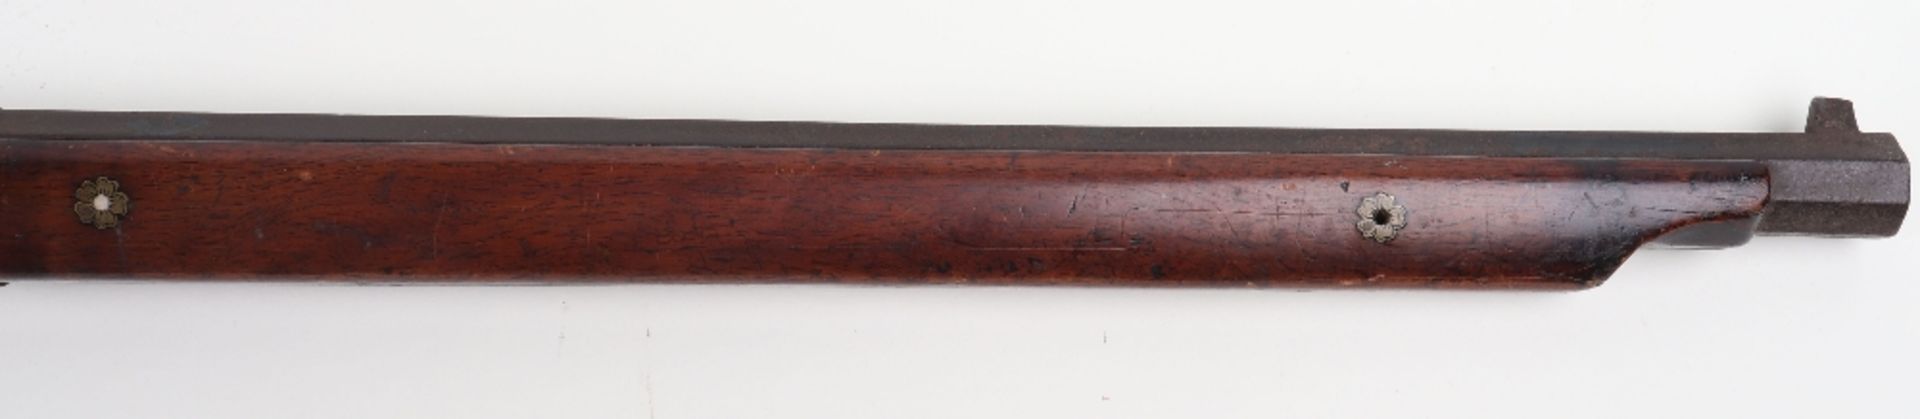 Japanese Matchlock Gun Tanegashima, 19th Century or Earlier - Image 9 of 13